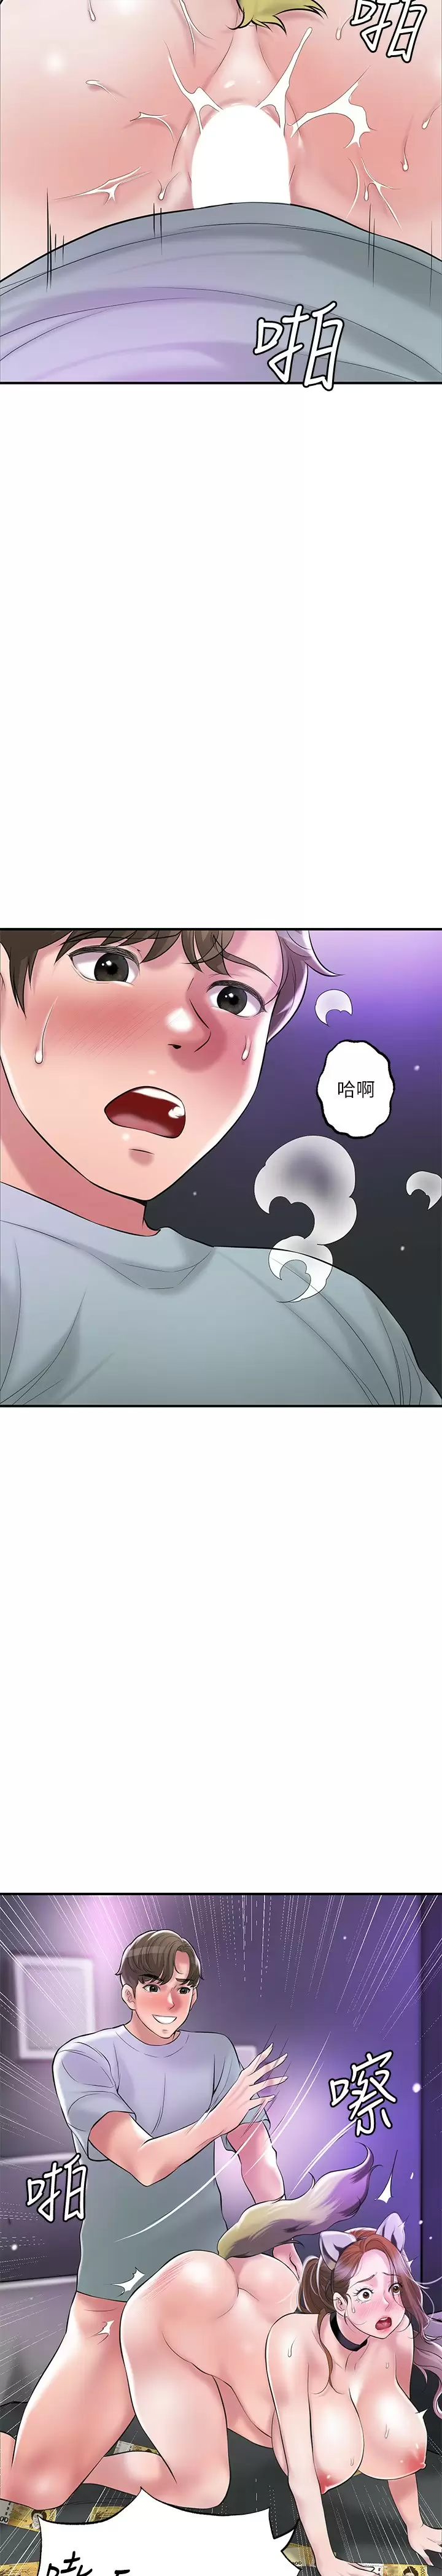 韩国污漫画 幸福督市 第61话 两条线的验孕棒 5